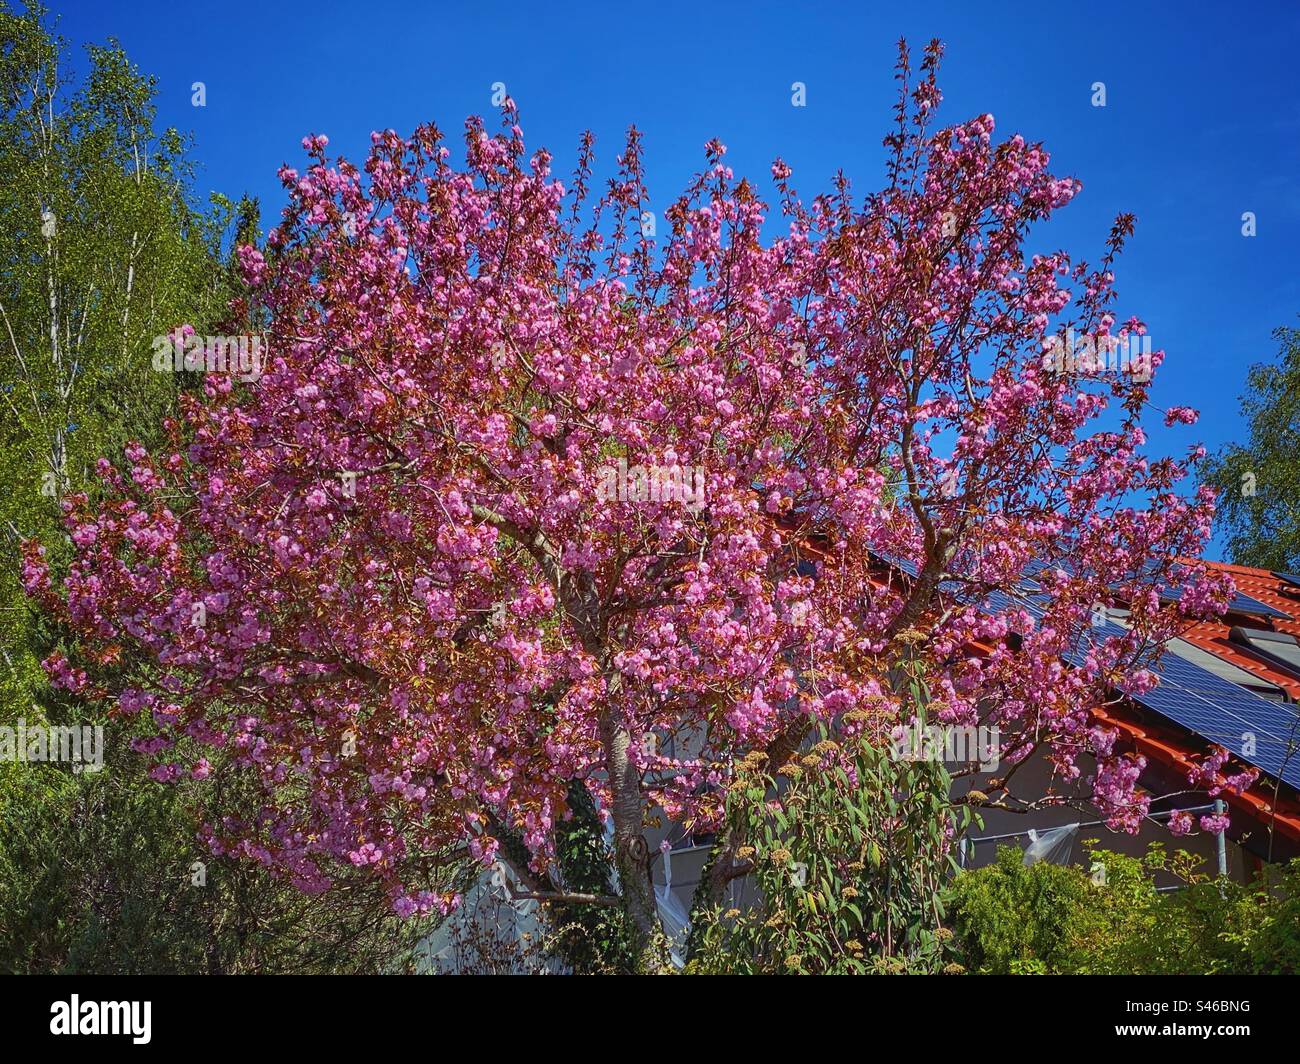 Arbre rose vif en fleurs au soleil dans un quartier résidentiel dans le sud de Munich, Allemagne. Banque D'Images